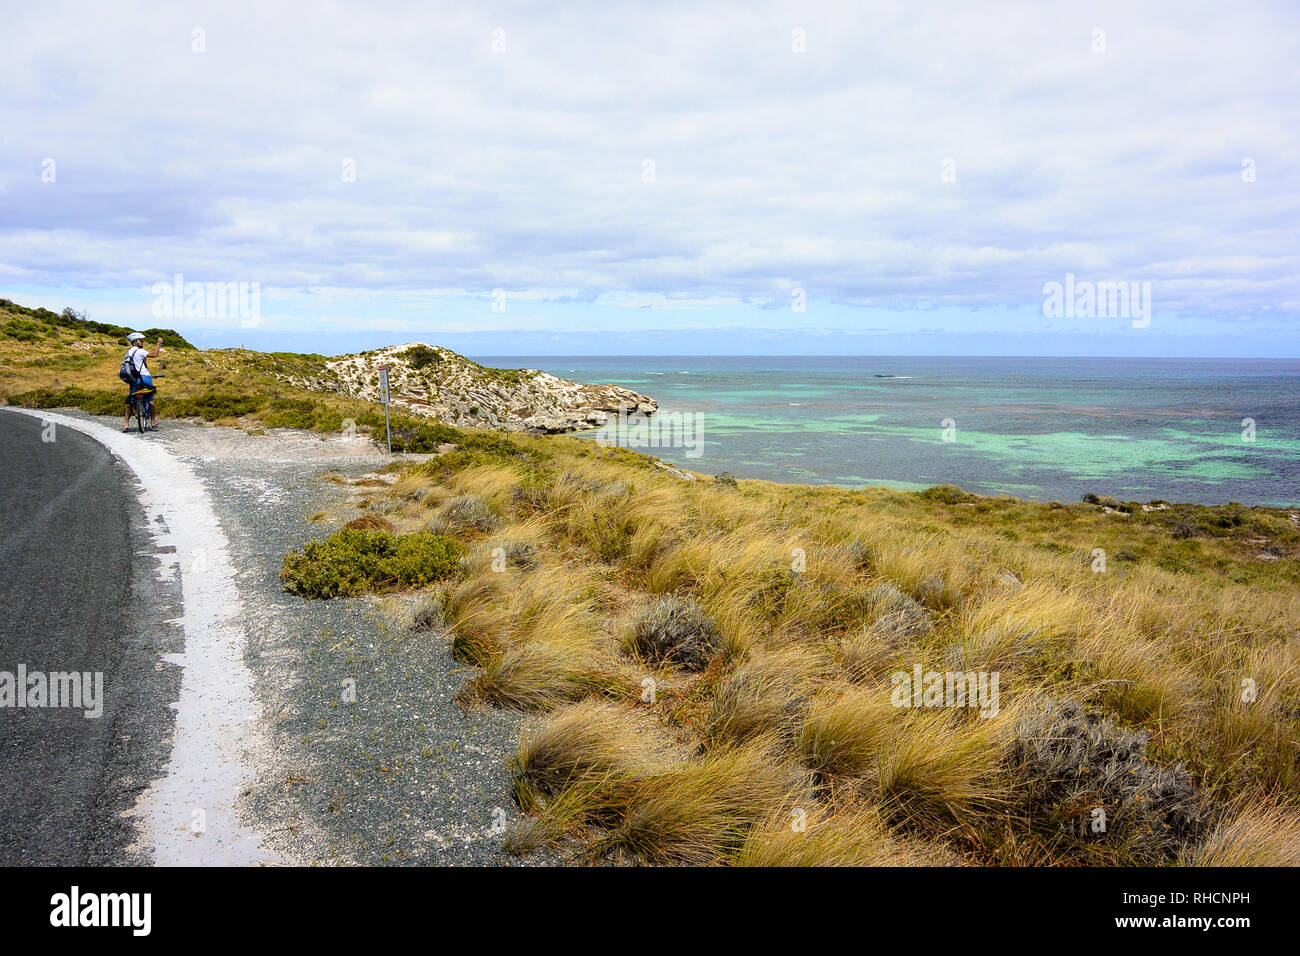 Mit dem Fahrrad auf der Seite der Straße, ein Tourist wird über sein Smartphone Bilder von den idyllischen grünen und blauen Meer Wasser Paradies Rottnest nehmen Stockfoto